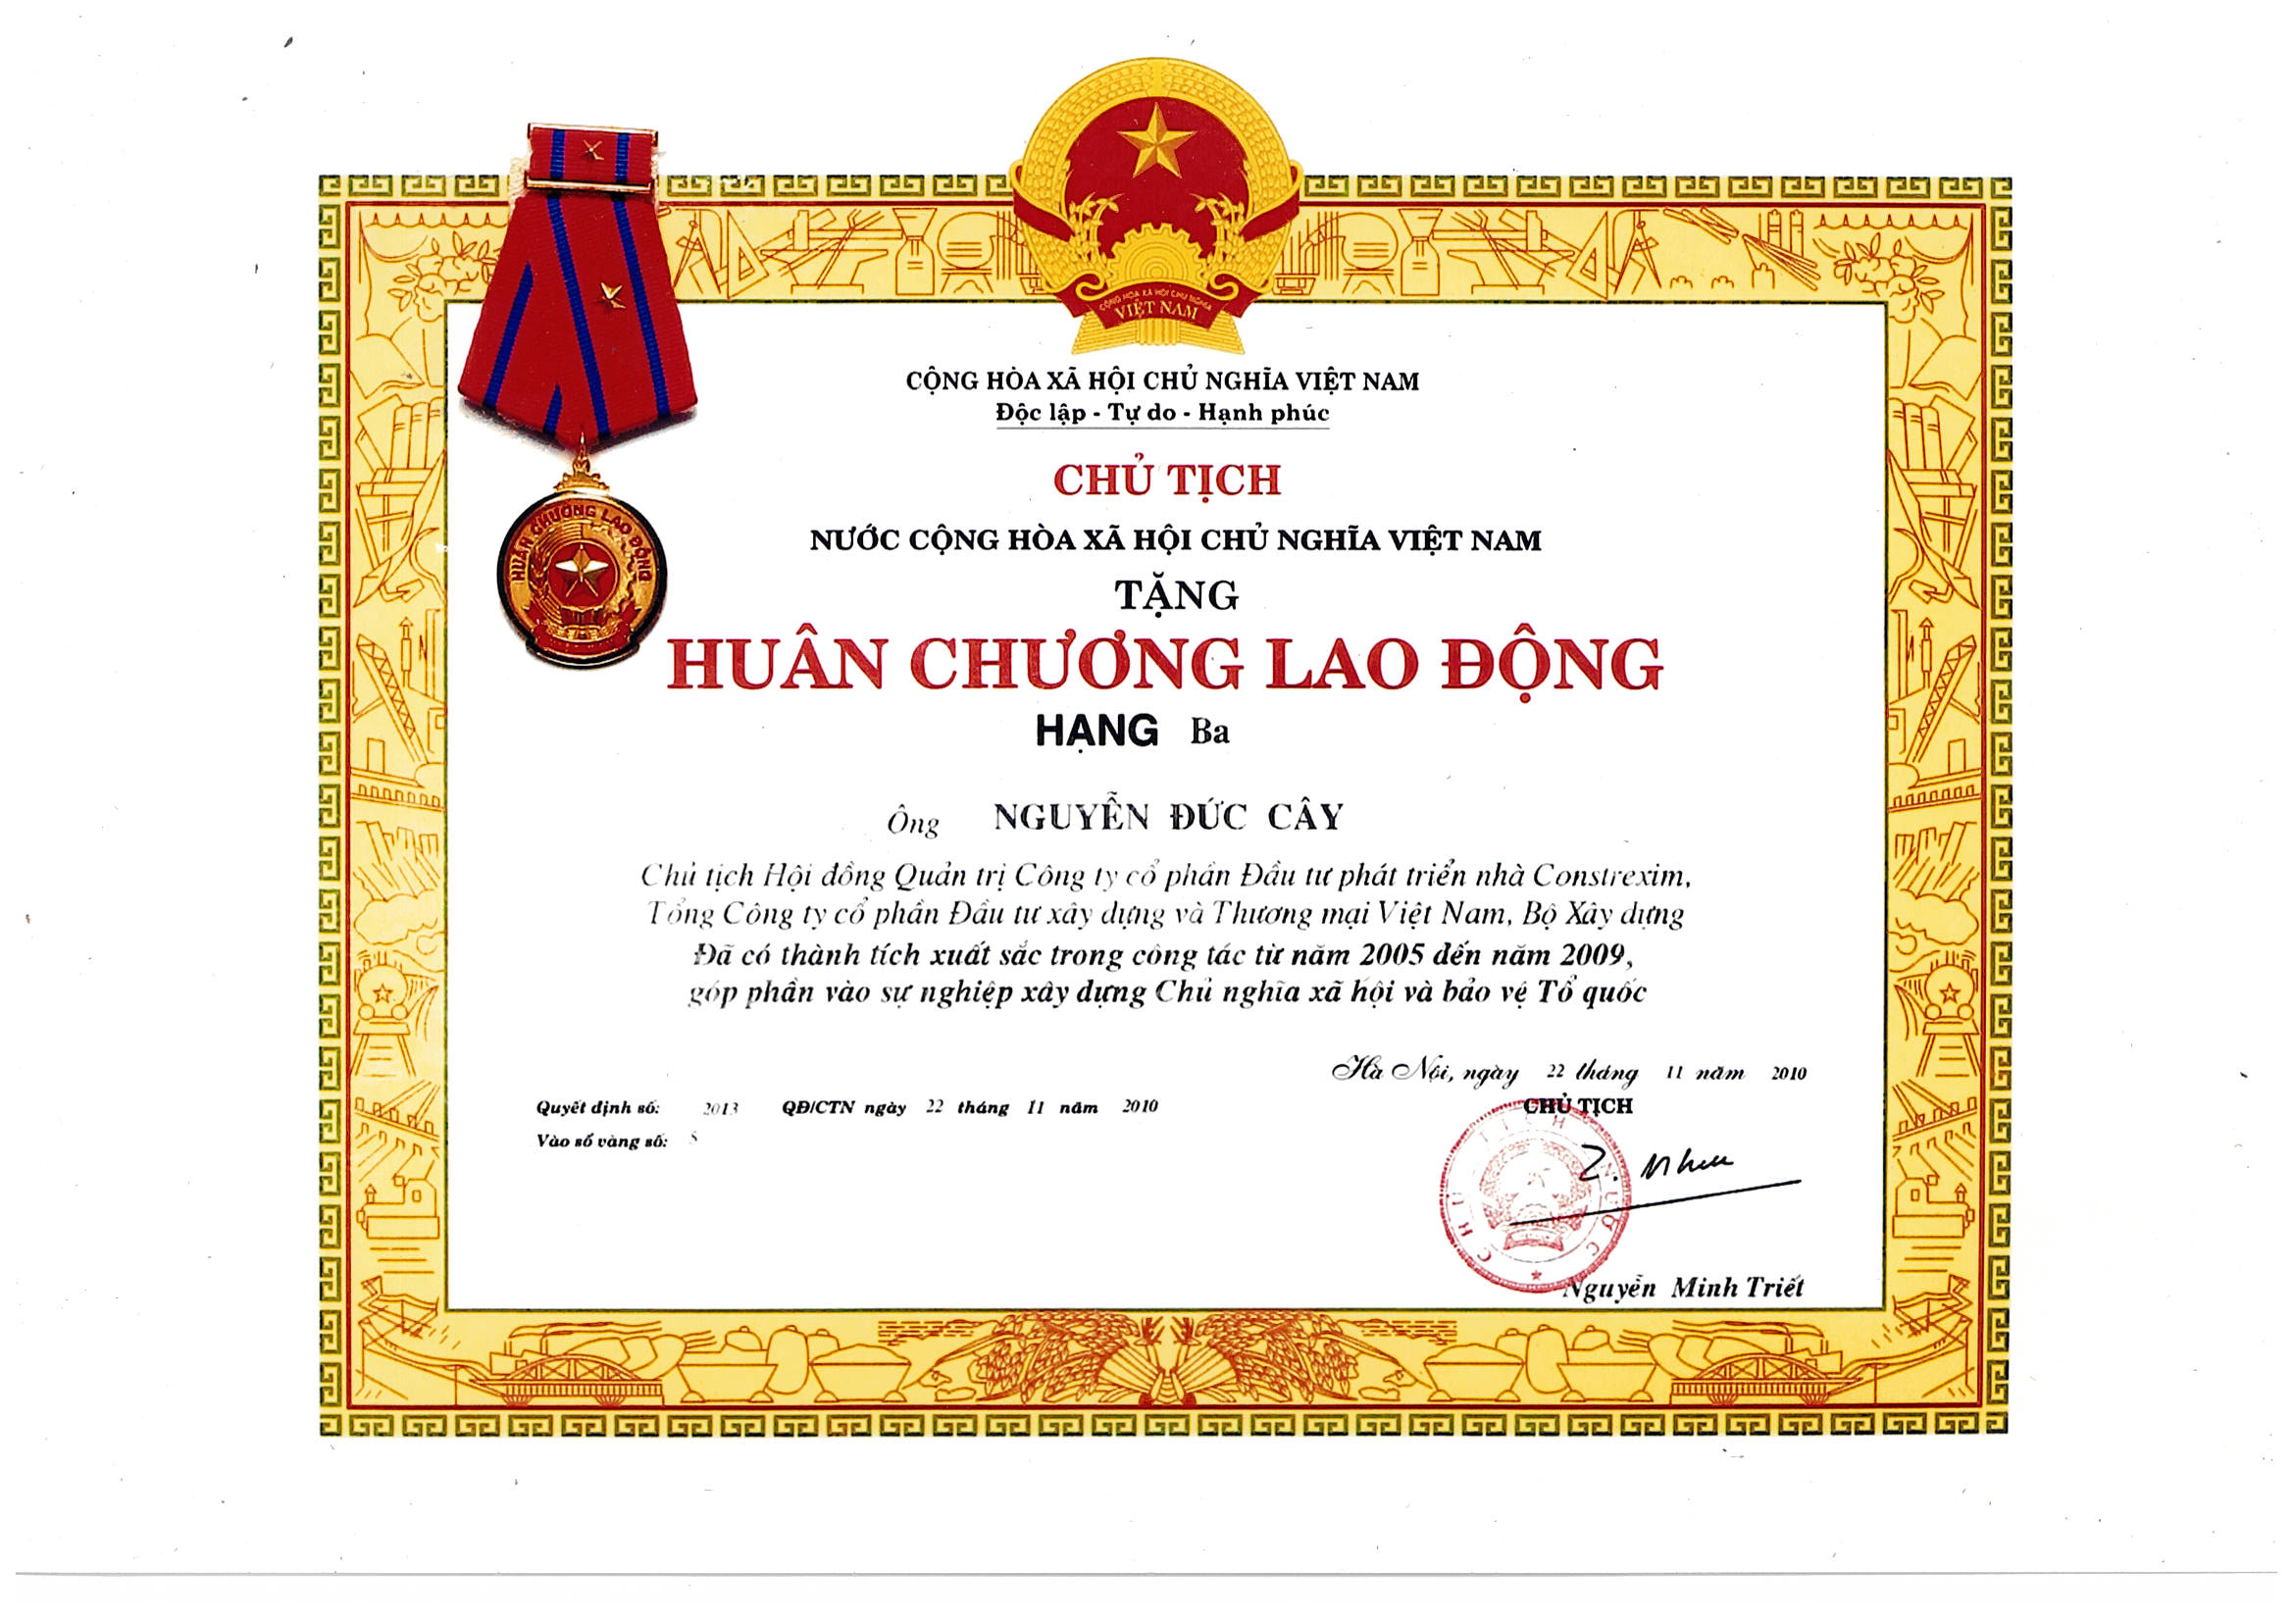 Huân chương lao động Hạng Ba của Chủ tịch nước Cộng Hòa Xã Hội Chủ Nghĩa Việt Nam tặng ông Nguyễn Đức Cây - Chủ tịch HĐQT Công ty